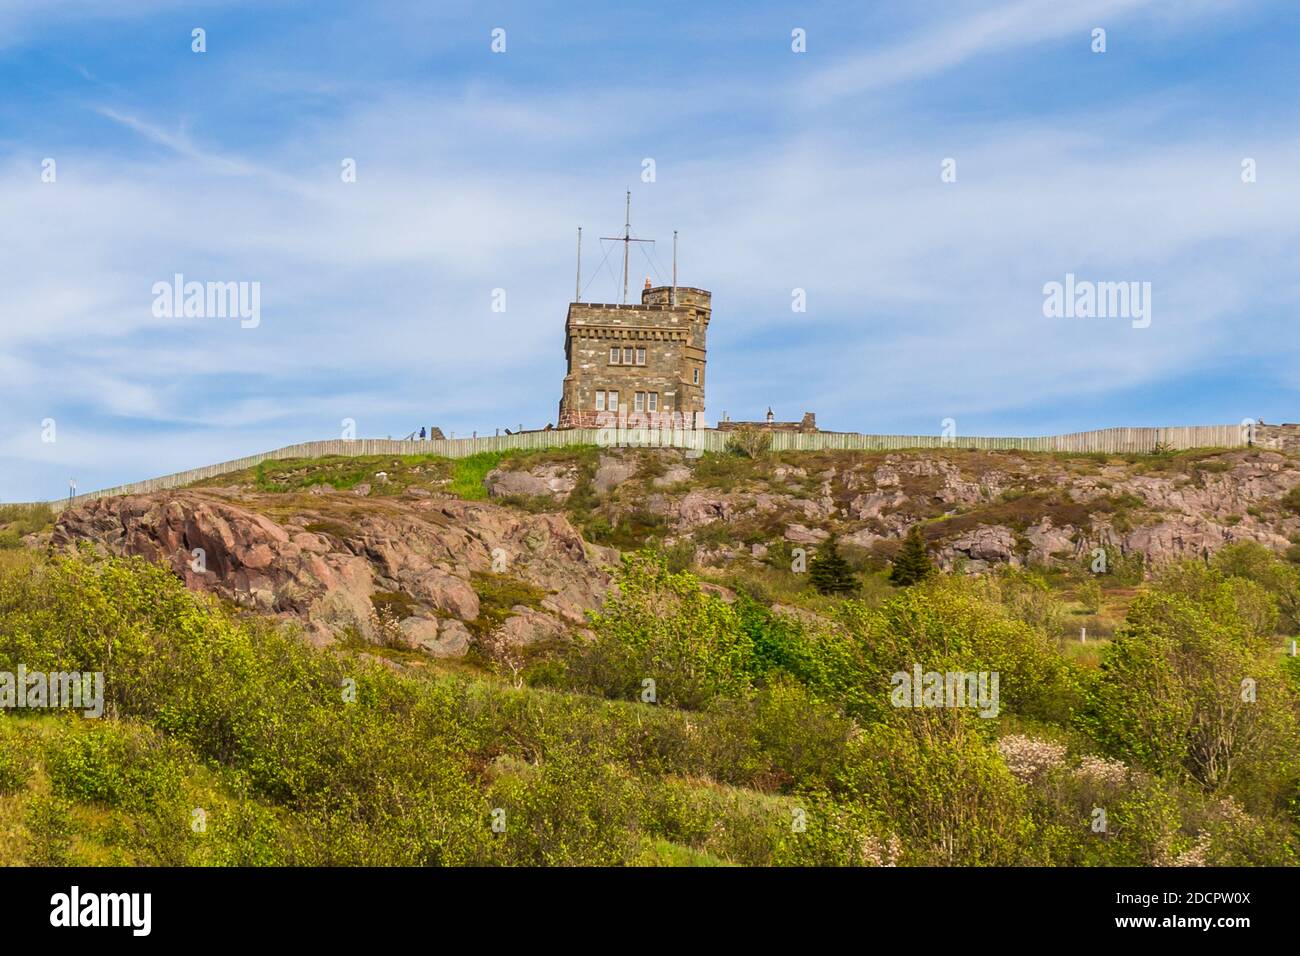 Signal Hill - Ort, wo die weltweit erste EM-Übertragung - St. Johns, Neufundland, Kanada. Szenen aus St. johns, Neufundland Stockfoto